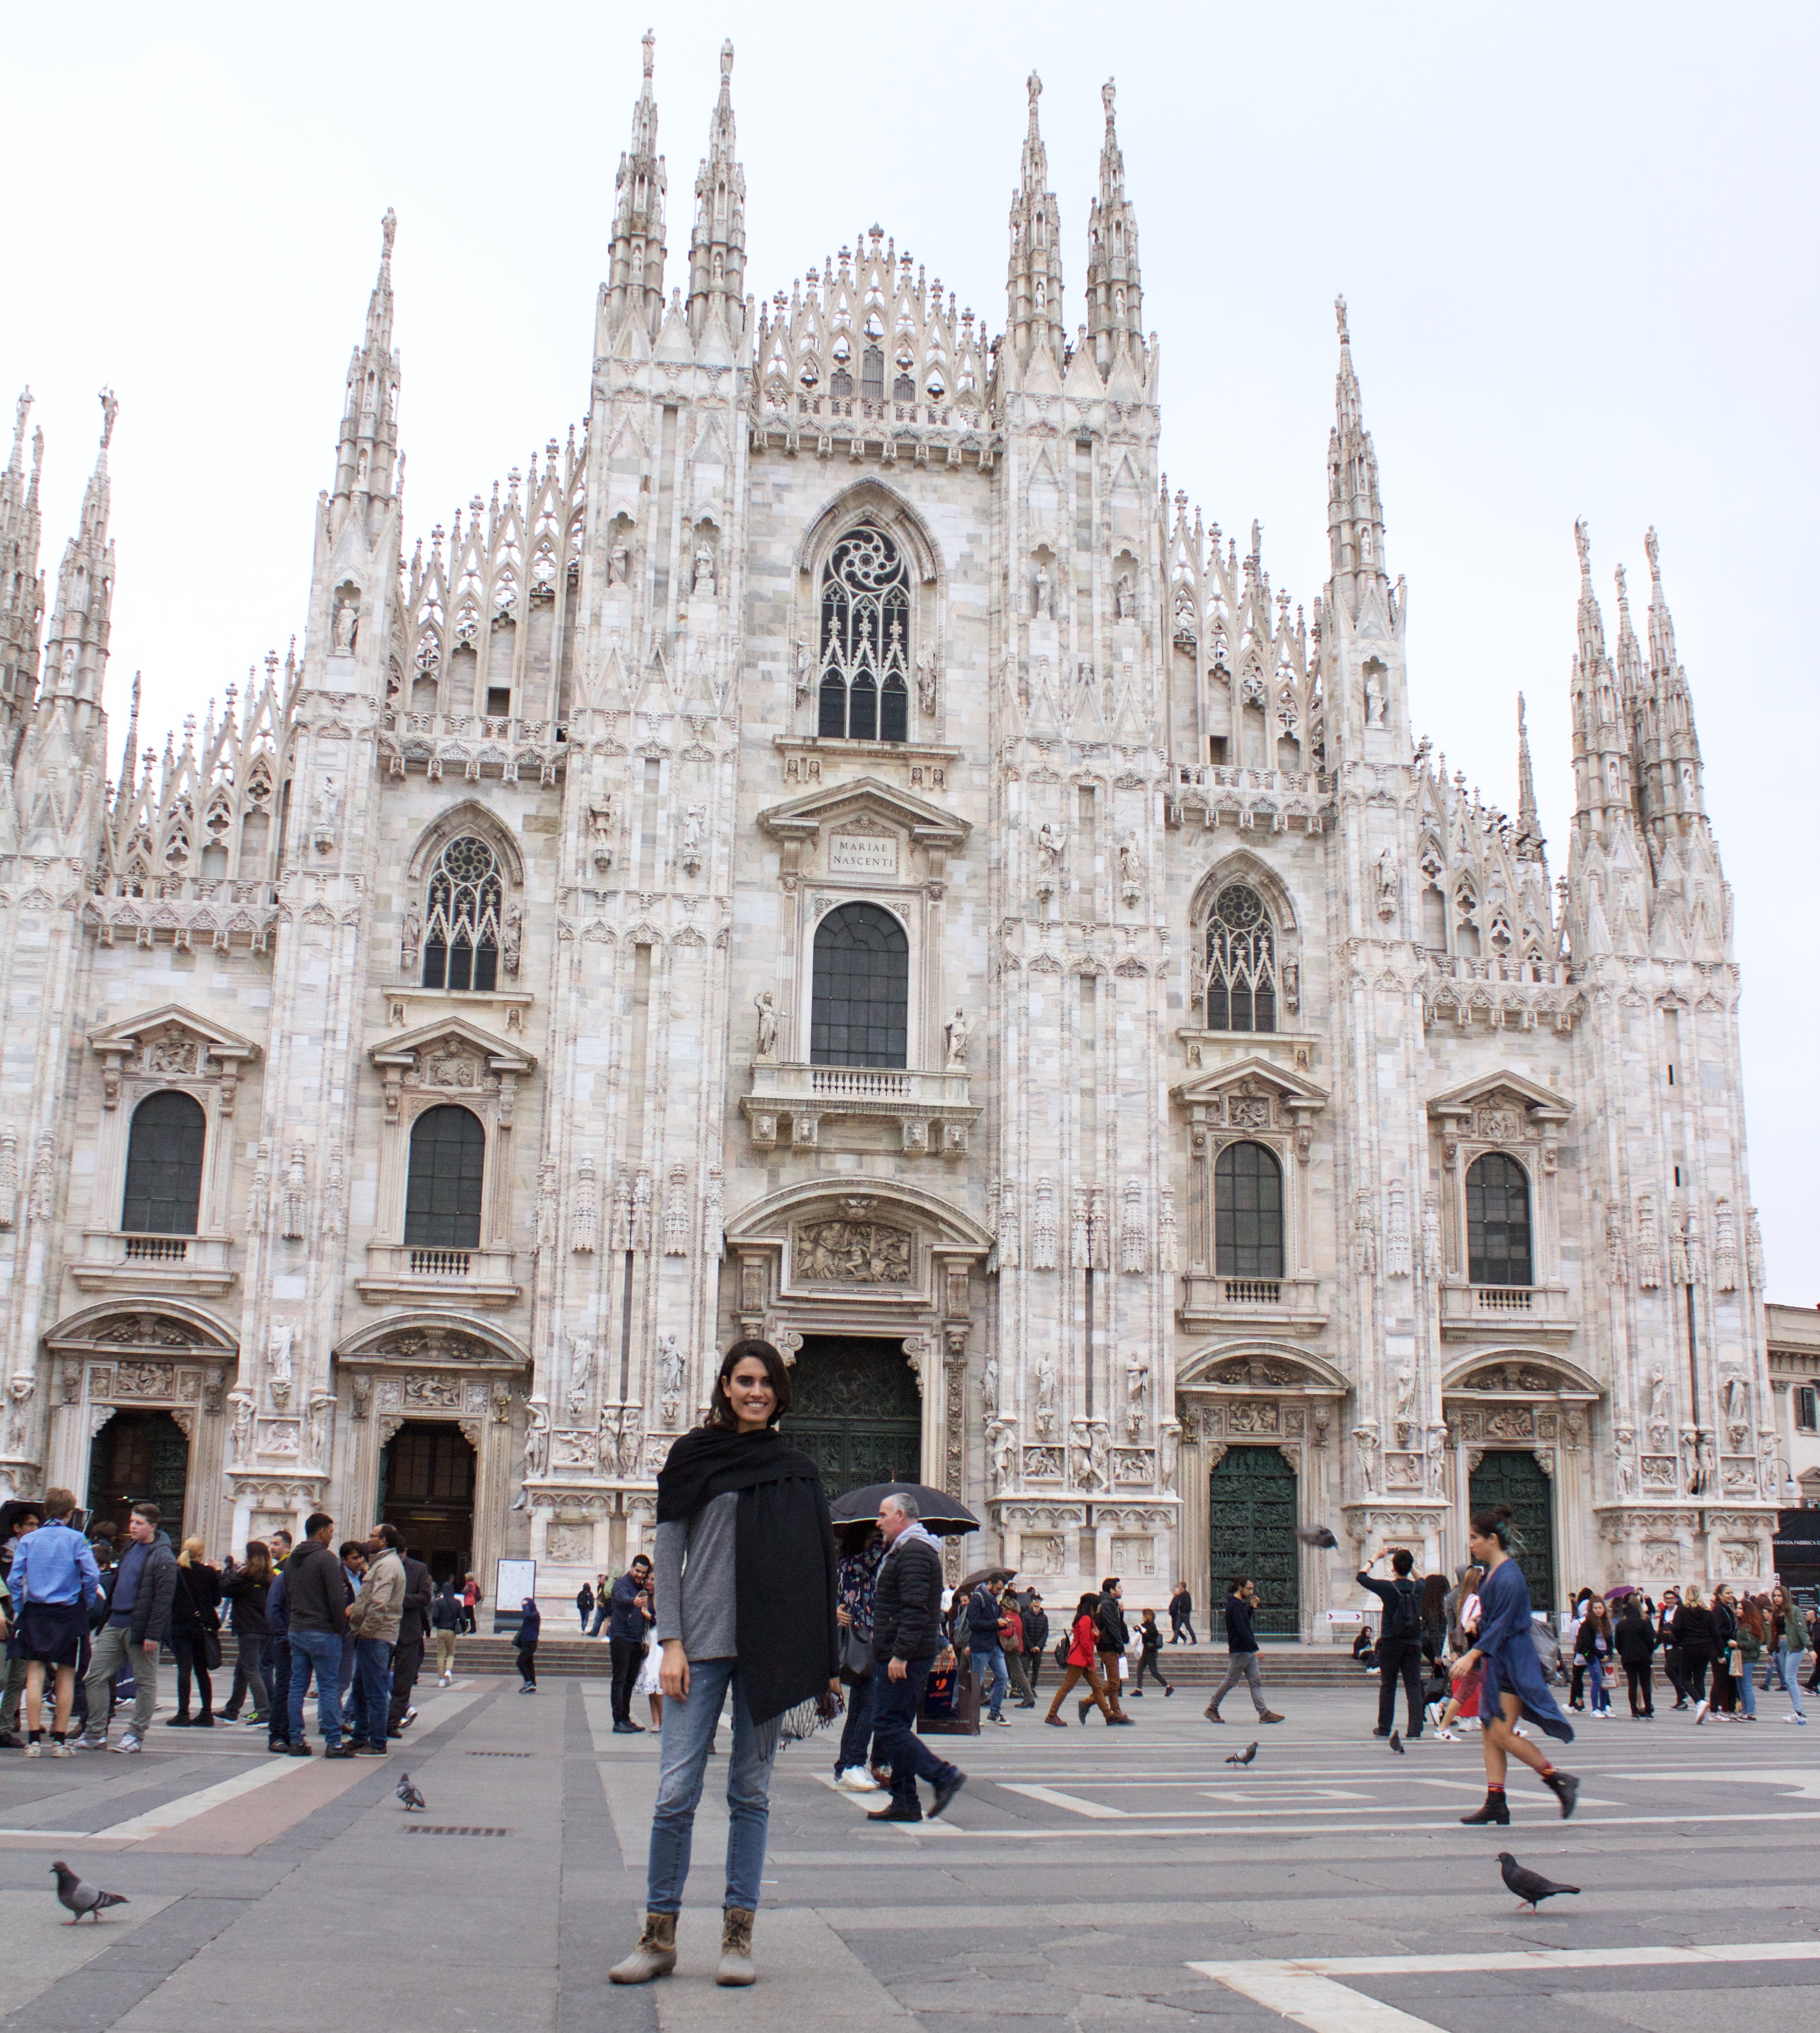 The Duomo di Milani and I